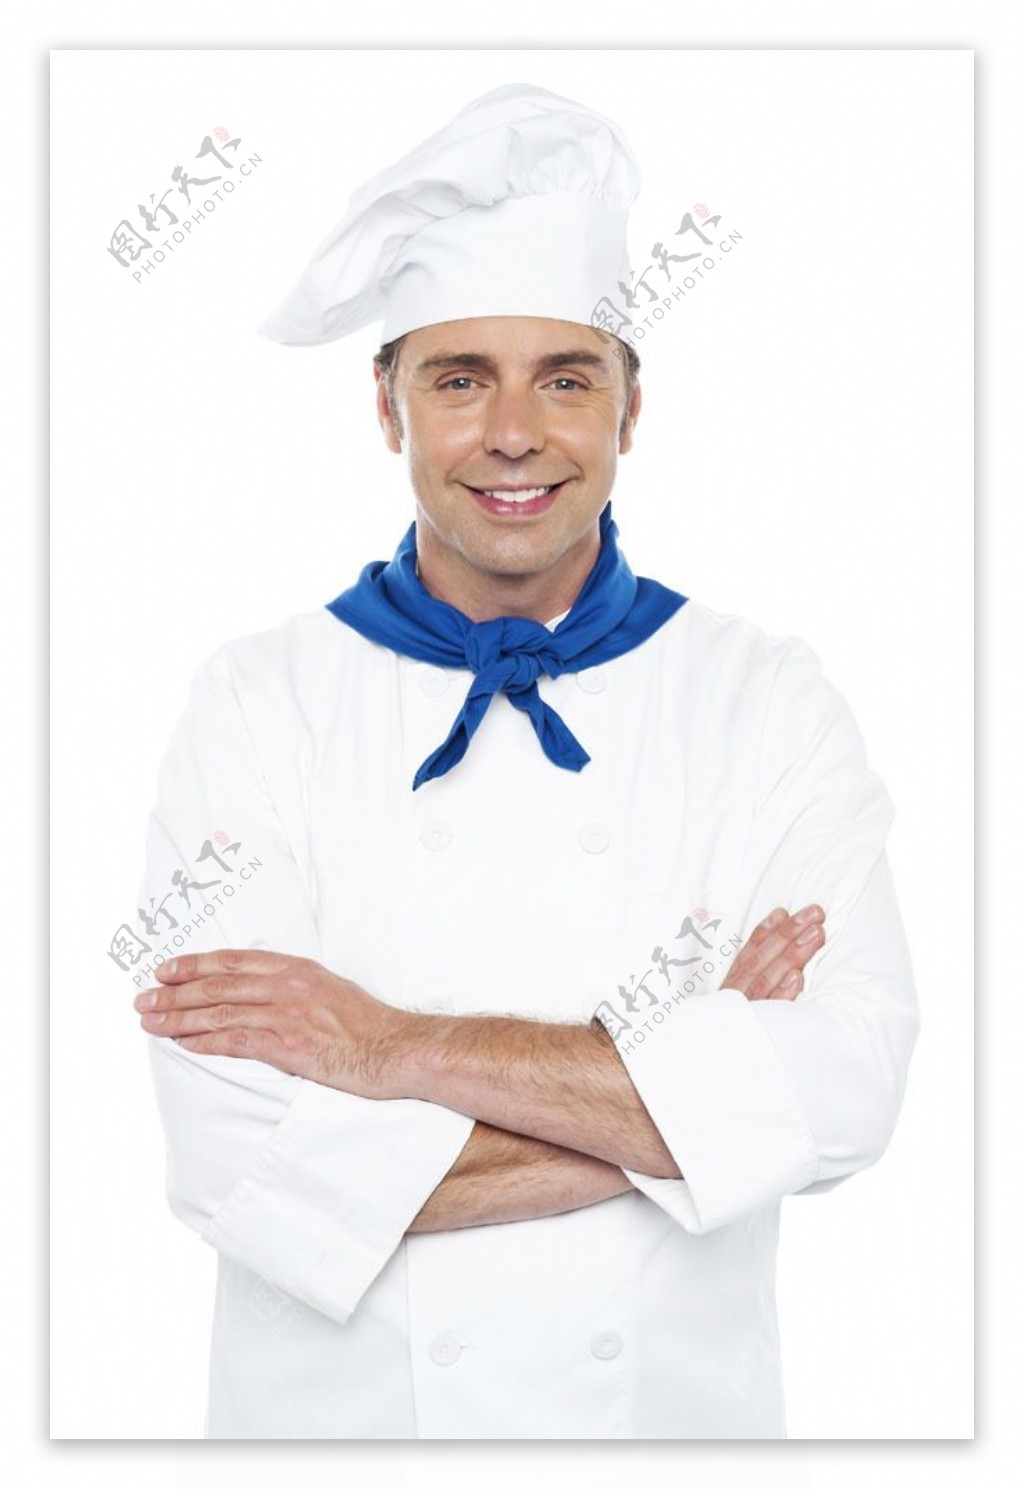 双手抱胸的厨师男人图片